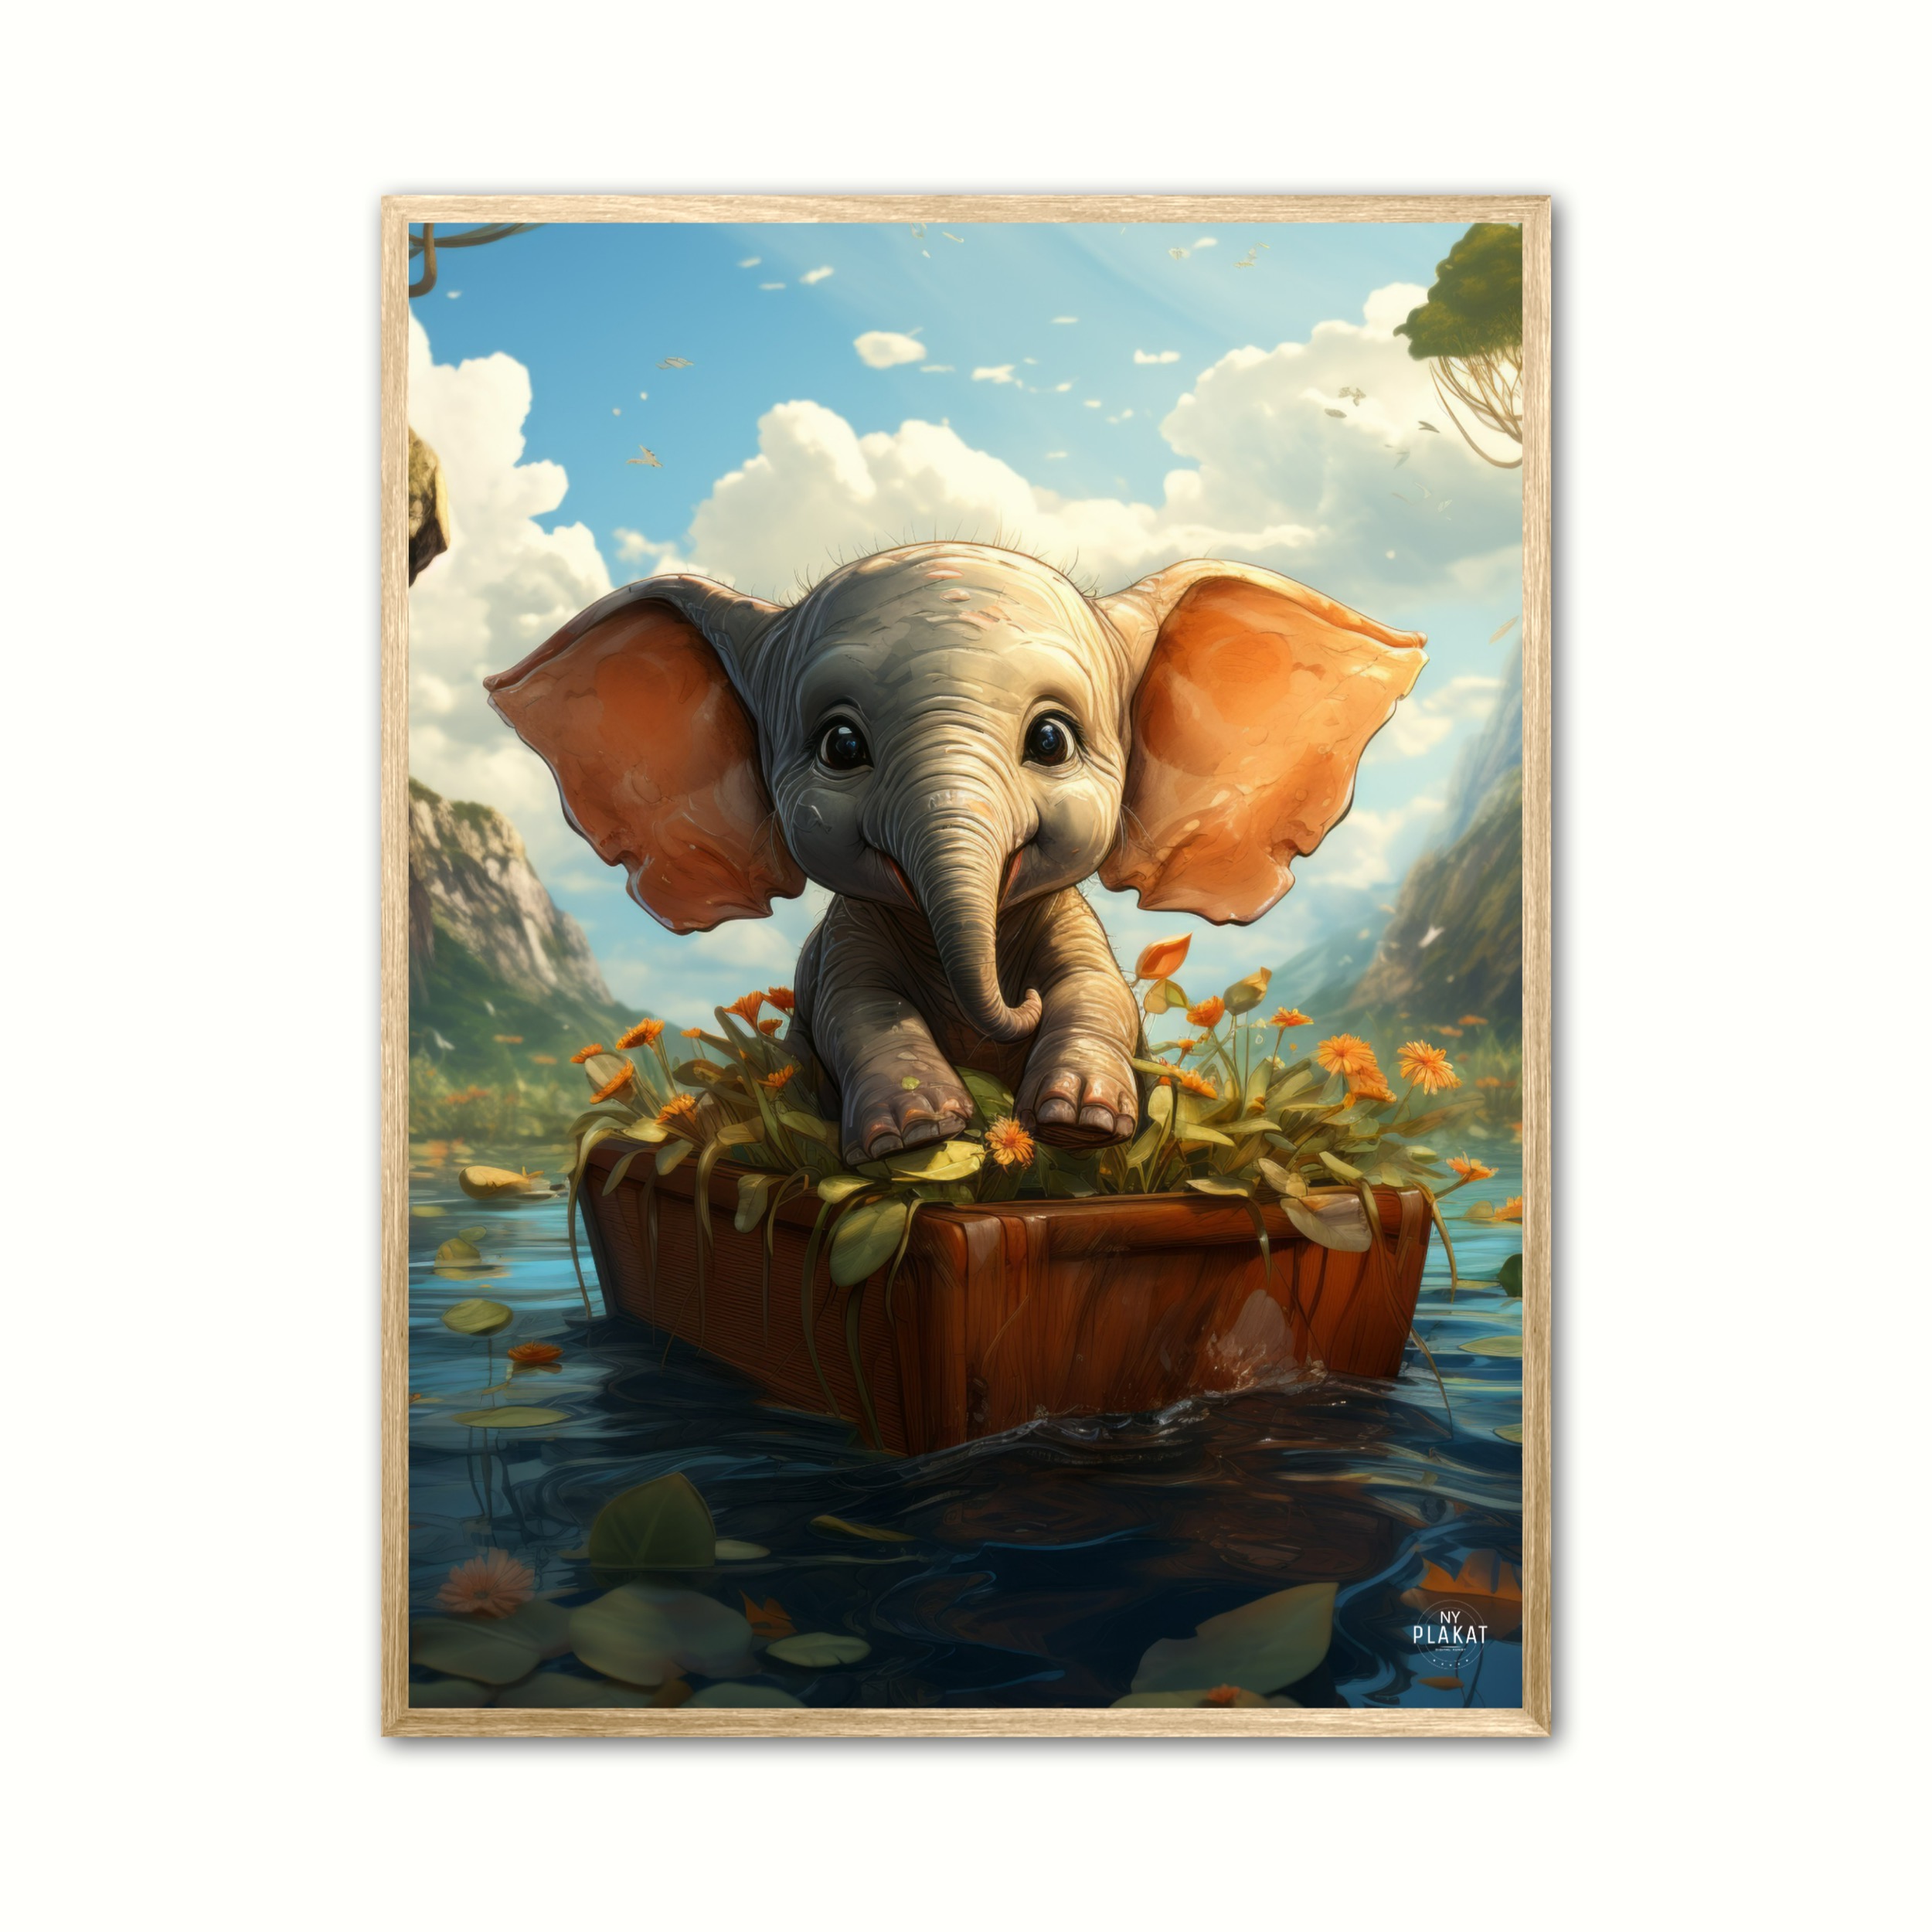 Billede af Elefant i bd - Fantasi plakat 21 x 29,7 cm (A4)